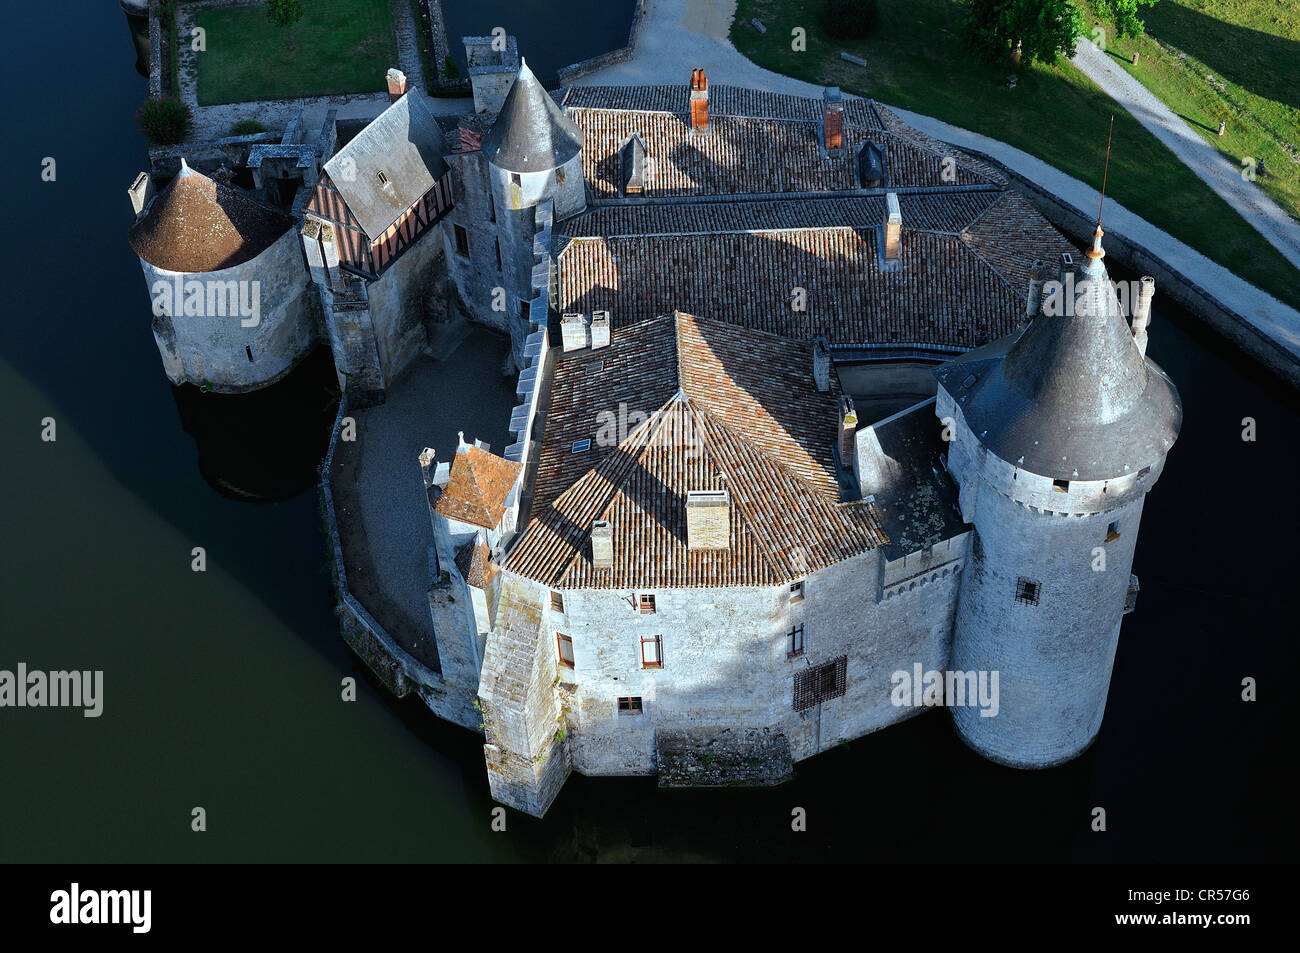 France, Gironde, le château de la Brède où vécut Montesquieu (vue aérienne) Banque D'Images